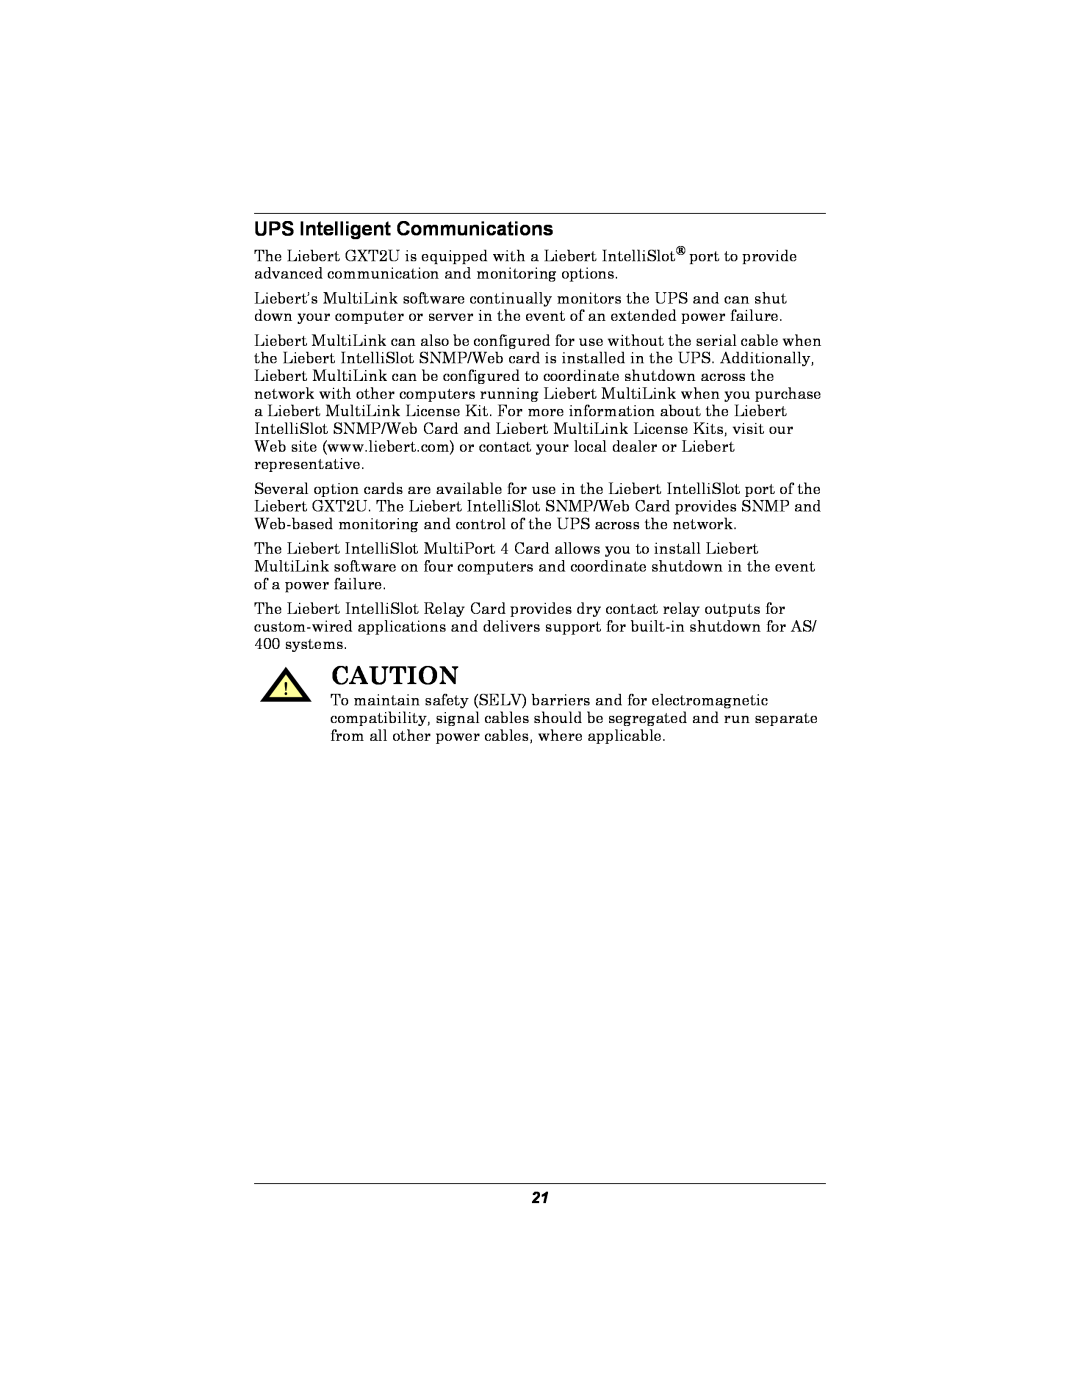 Emerson GXT2U user manual UPS Intelligent Communications 